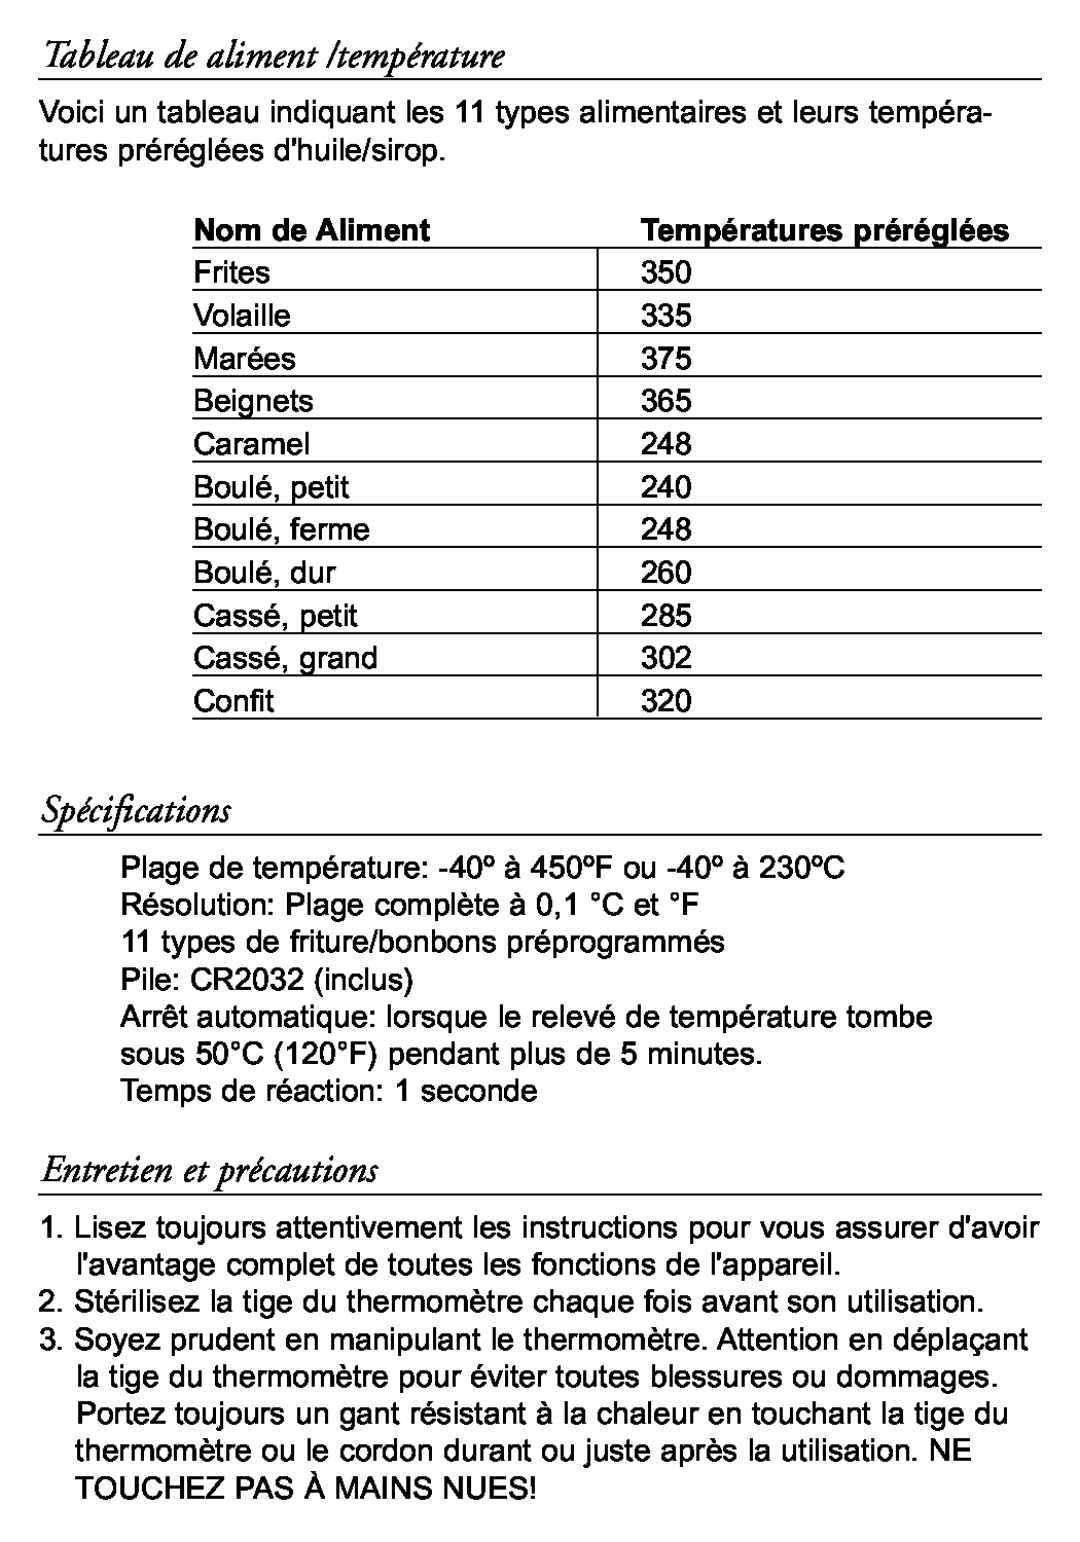 Taylor 519 instruction manual Tableau de aliment /température, Spécifications, Entretien et précautions, Nom de Aliment 